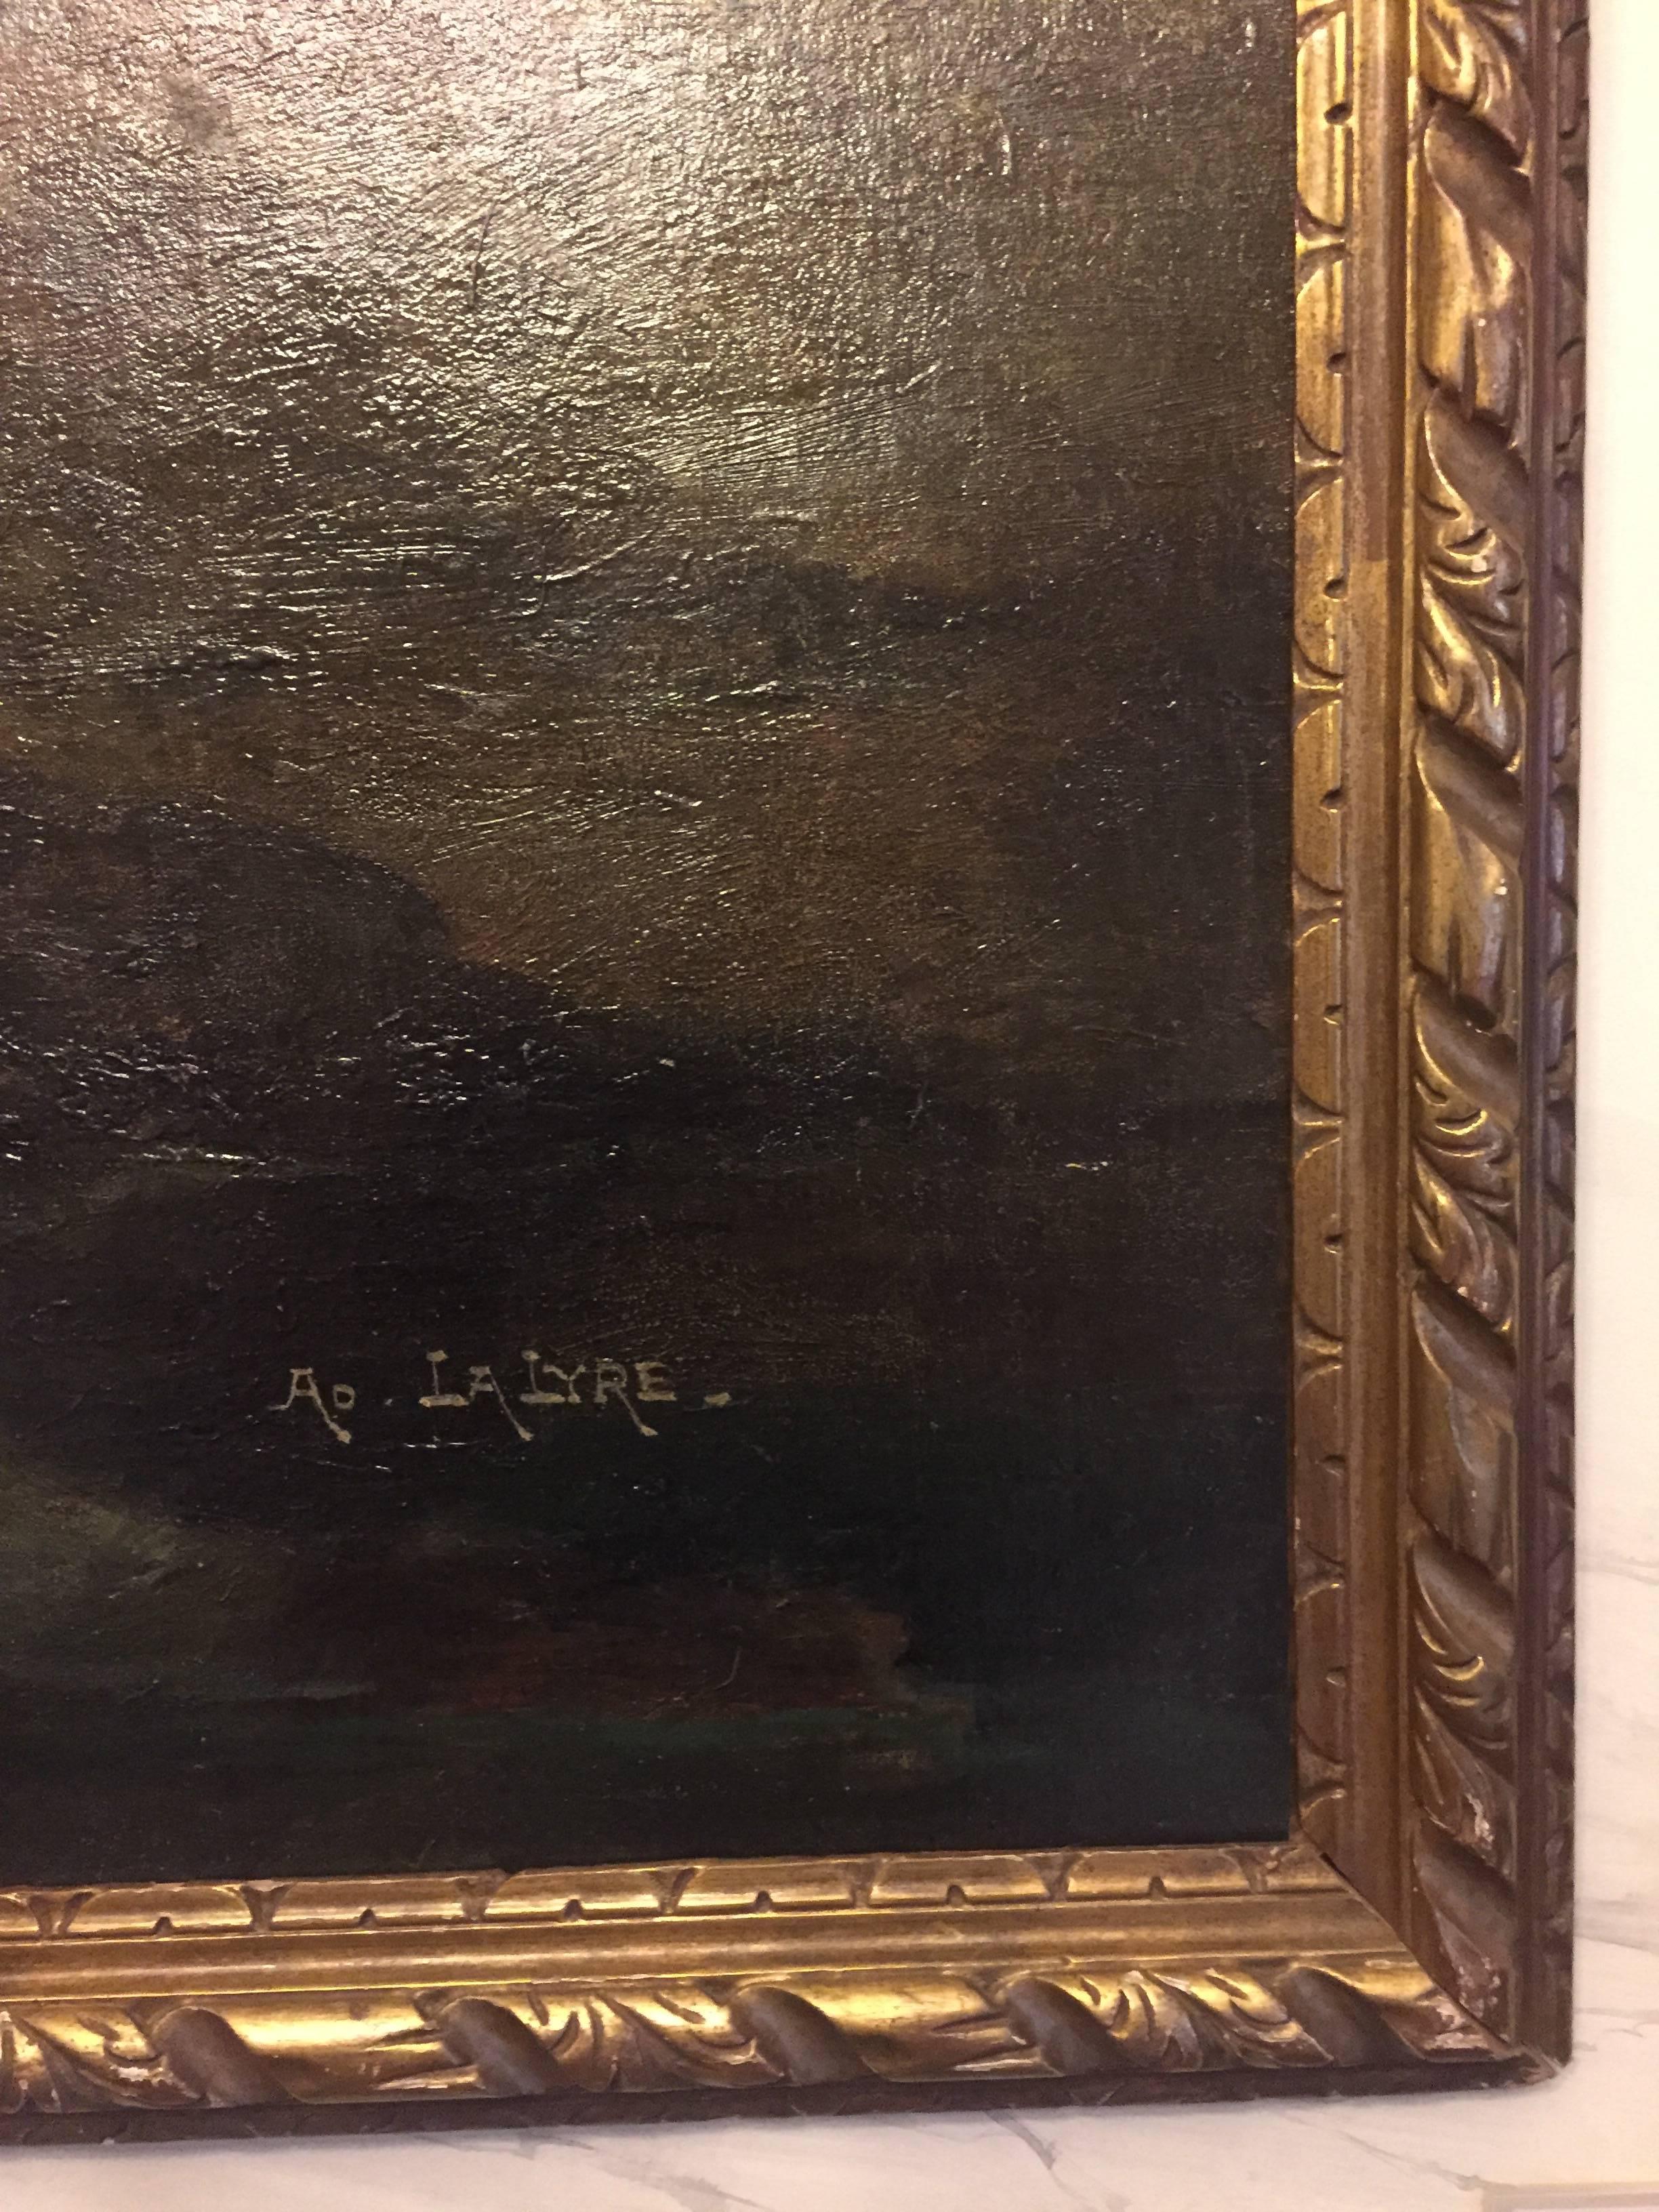 Dans les Rochers de la Plage, une Carteret  - Painting de Adolphe Lalyre 